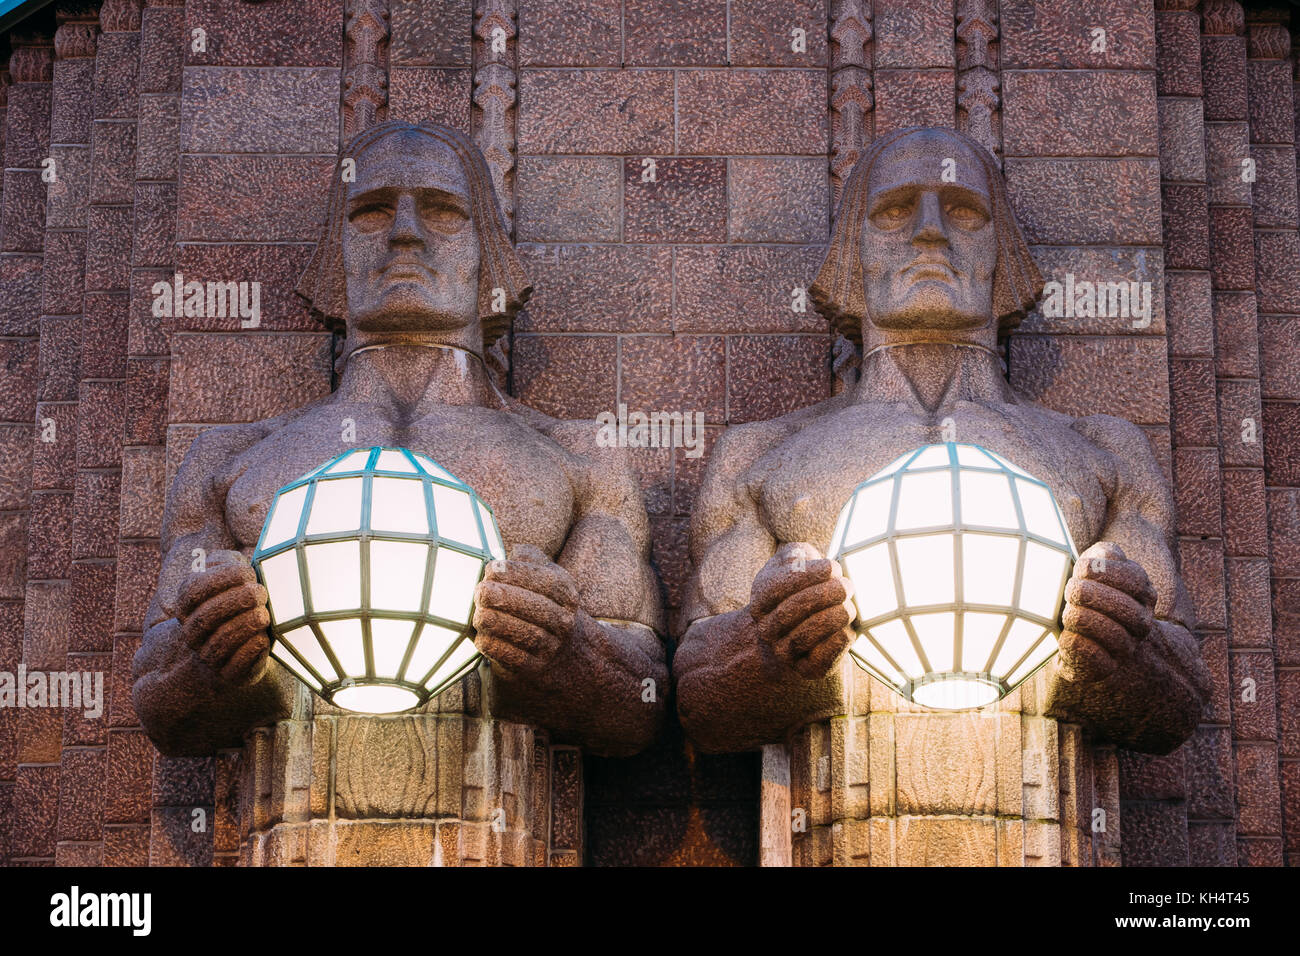 Helsinki, Finnland. Nacht Blick auf zwei Paare von Statuen, die die kugelförmige Lampen auf Eingang Hauptbahnhof Helsinki. Abend oder Nacht il Stockfoto